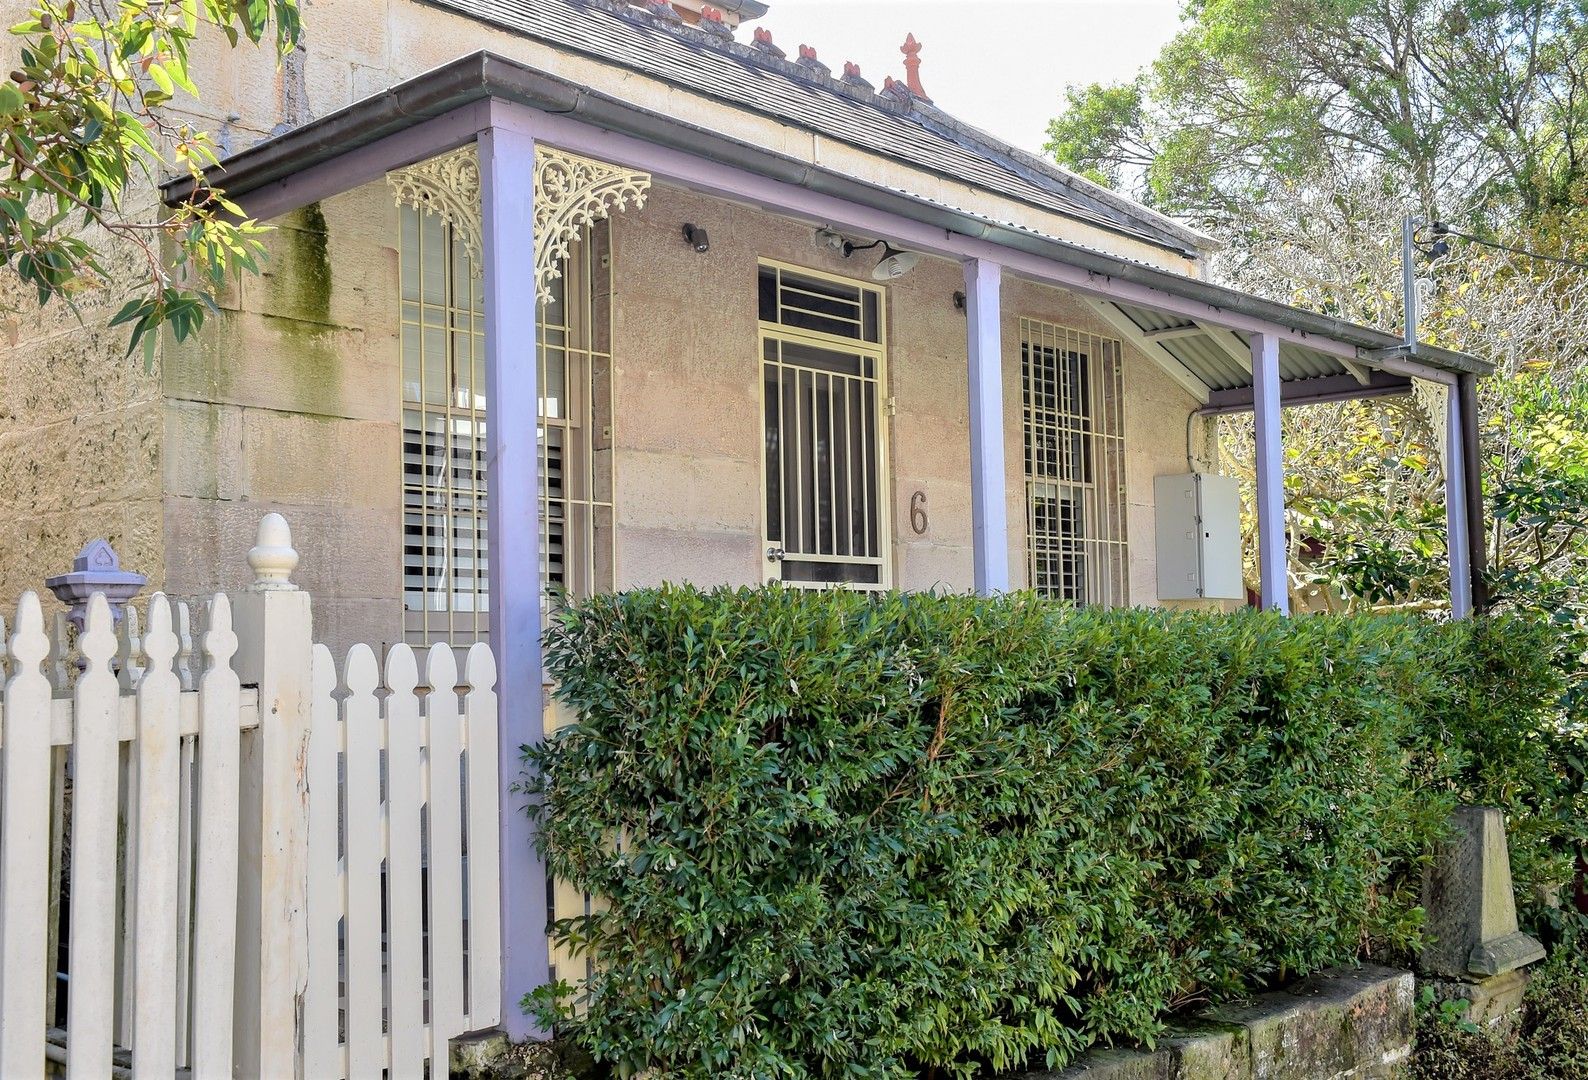 3 bedrooms House in 6 Waterview Street BALMAIN NSW, 2041